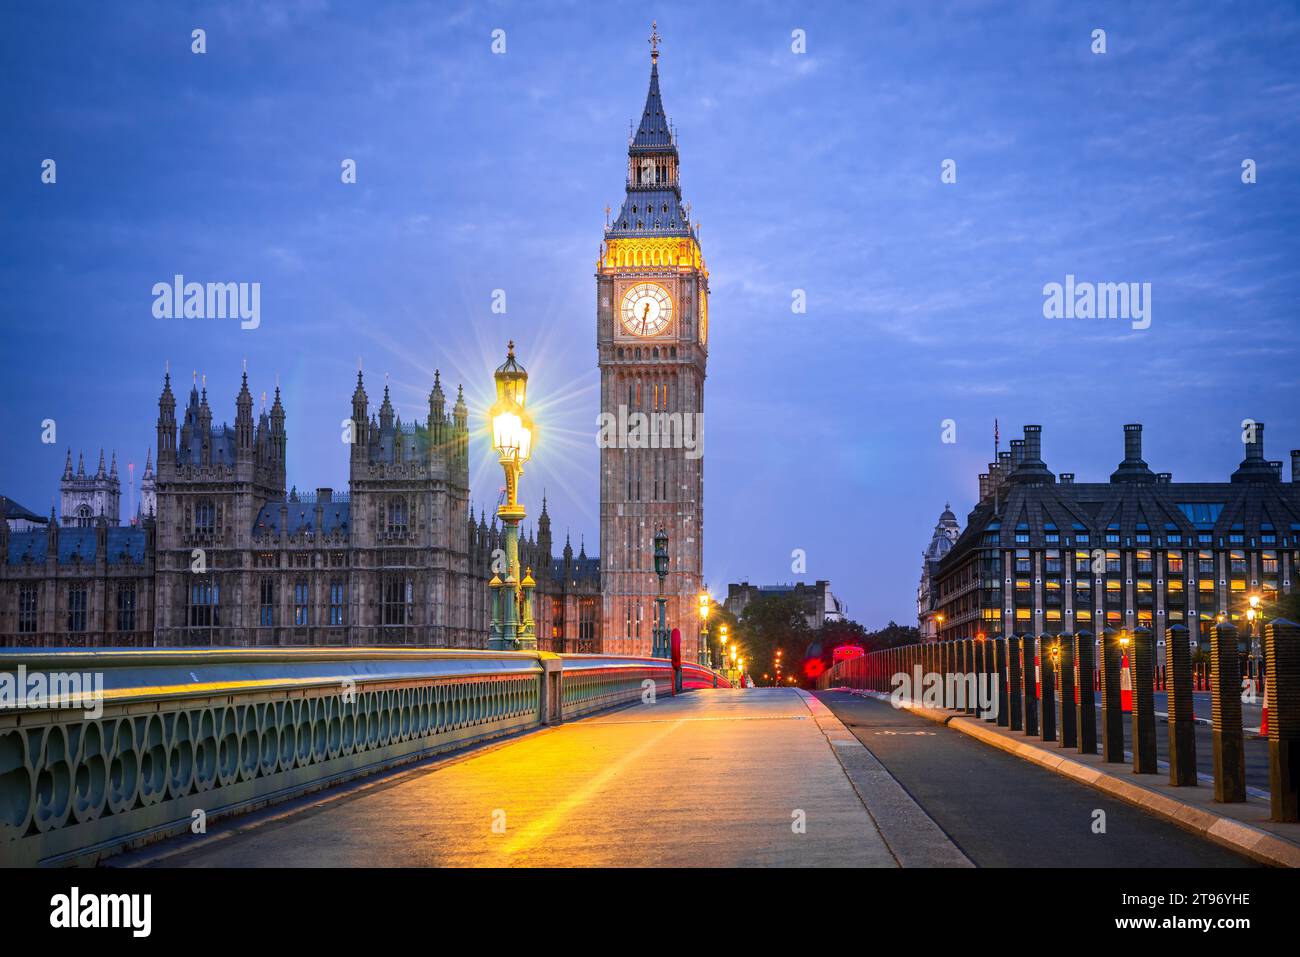 London, Vereinigtes Königreich. Westminster Bridge, Big Ben und House of Commons Gebäude im Hintergrund, reisen englische Wahrzeichen zur blauen Stunde. Stockfoto